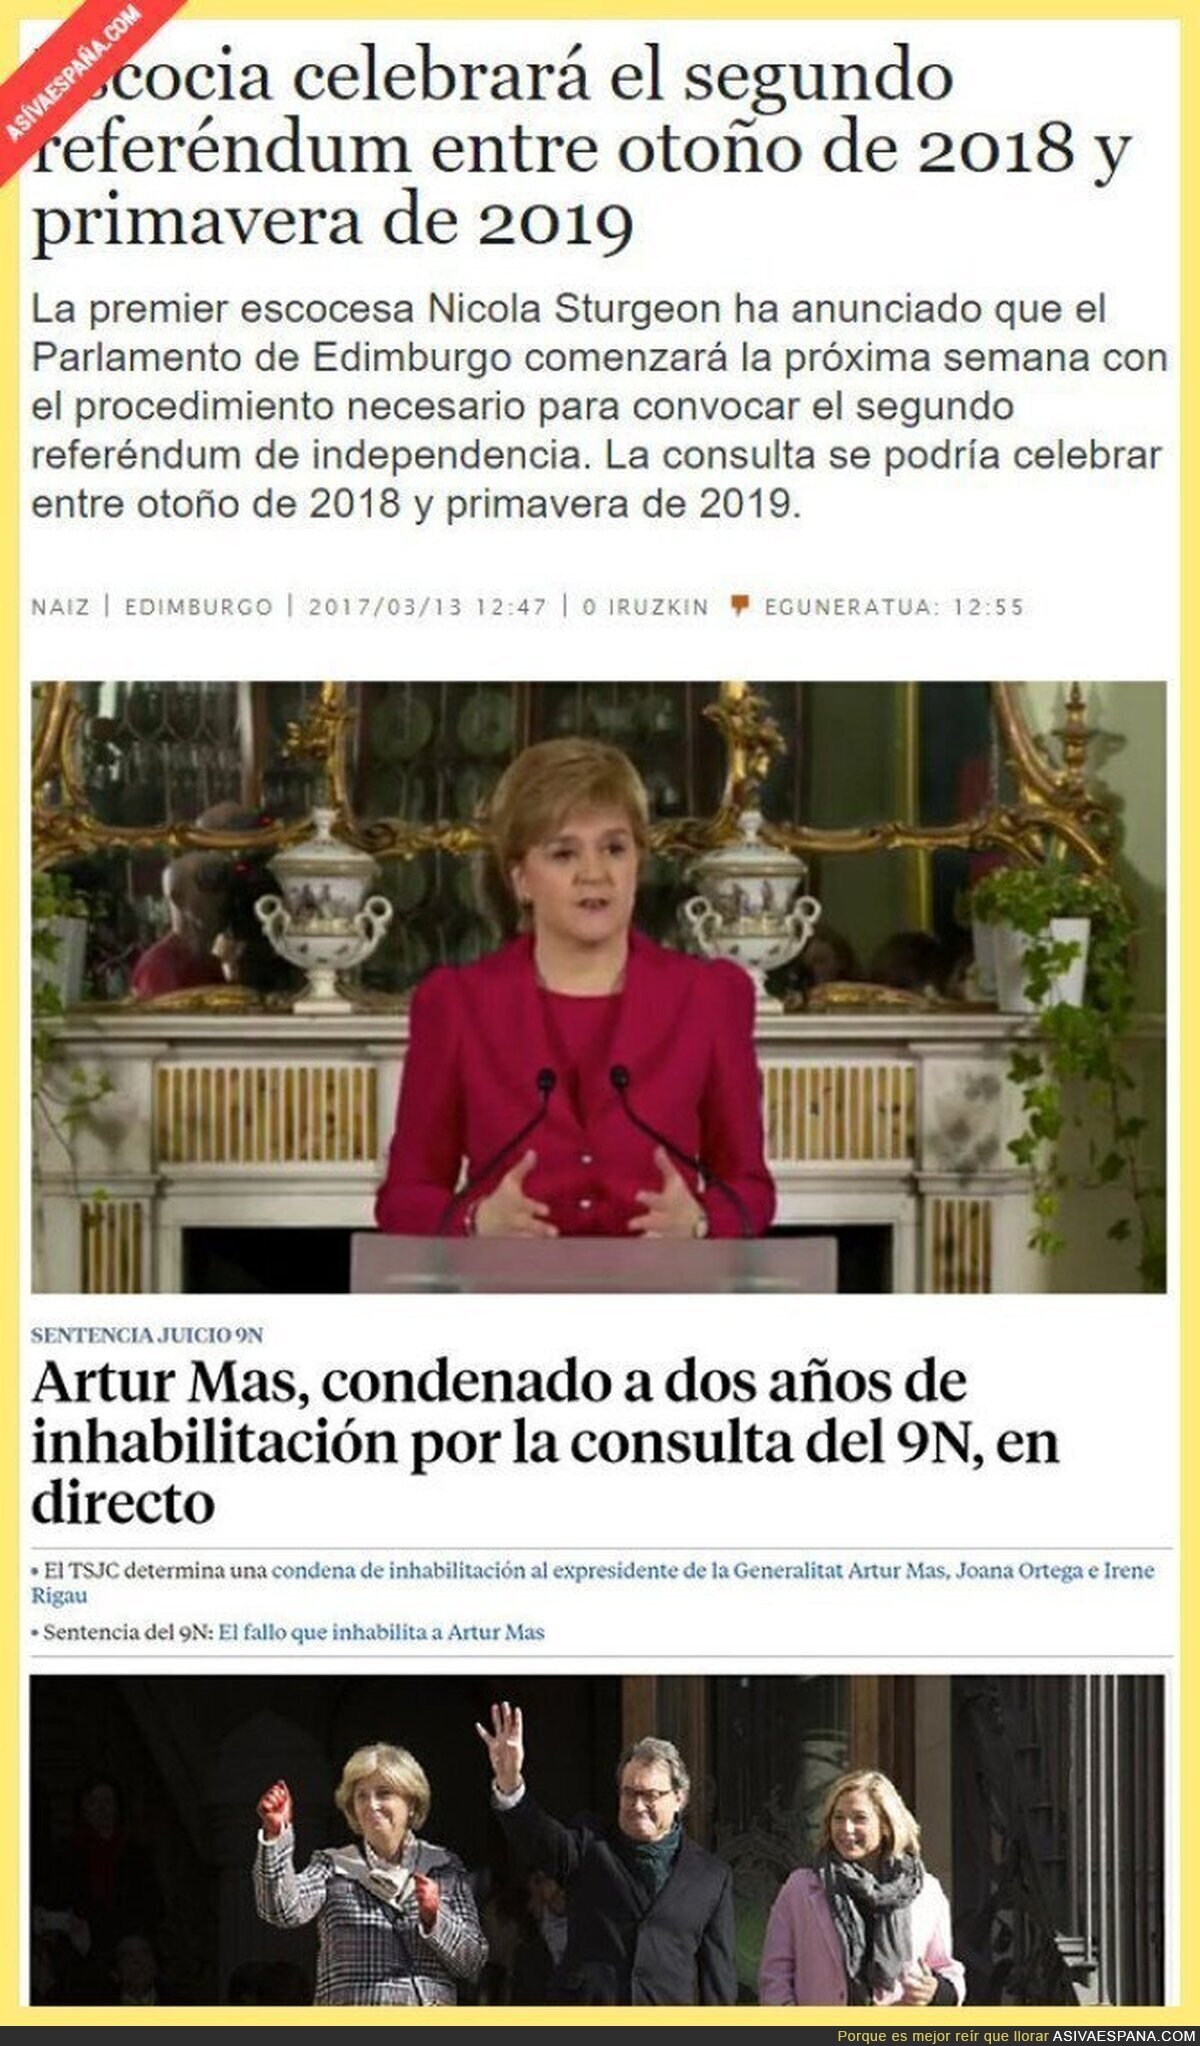 La diferencia de democracia entre España y Escocia